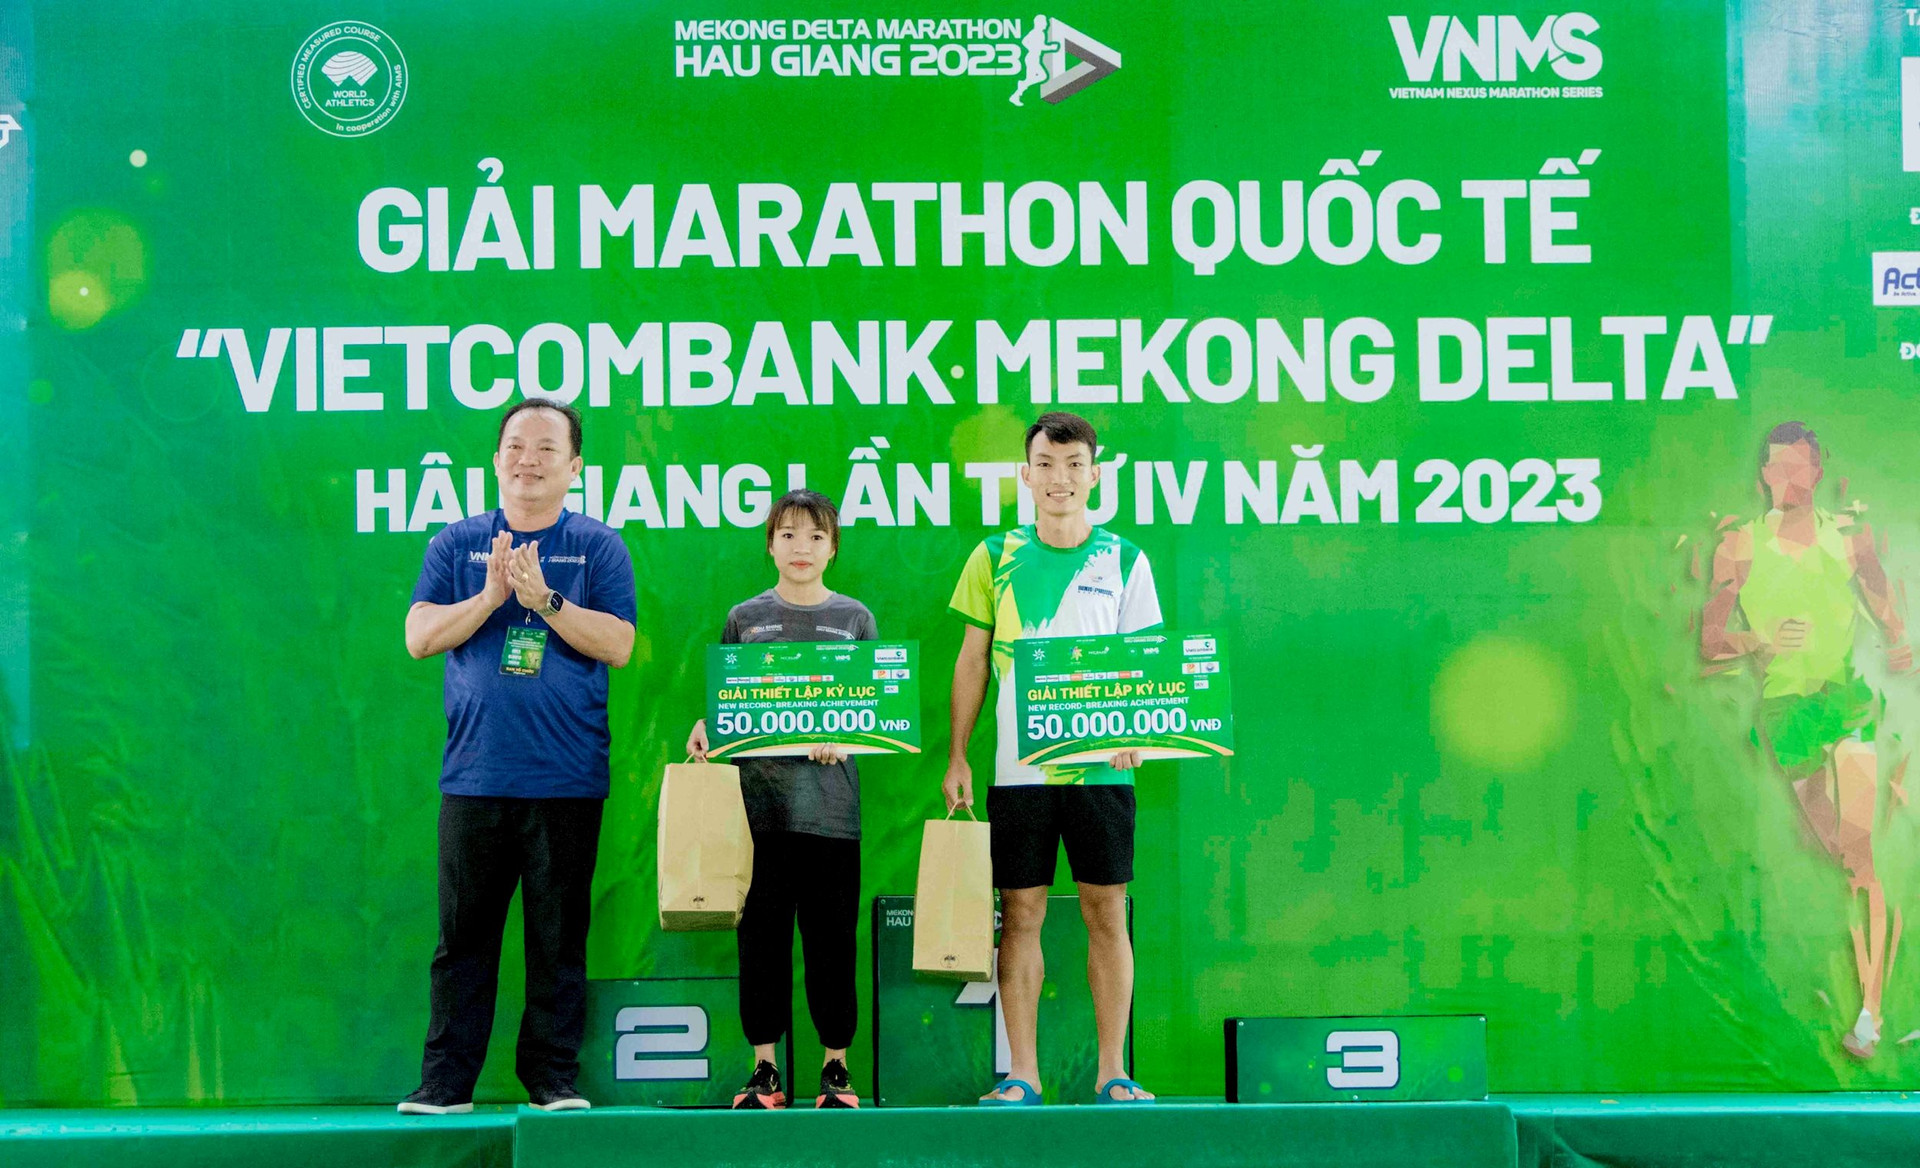 Kỷ lục mới tại giải Marathon quốc tế Hậu Giang 2023 - Ảnh 1.